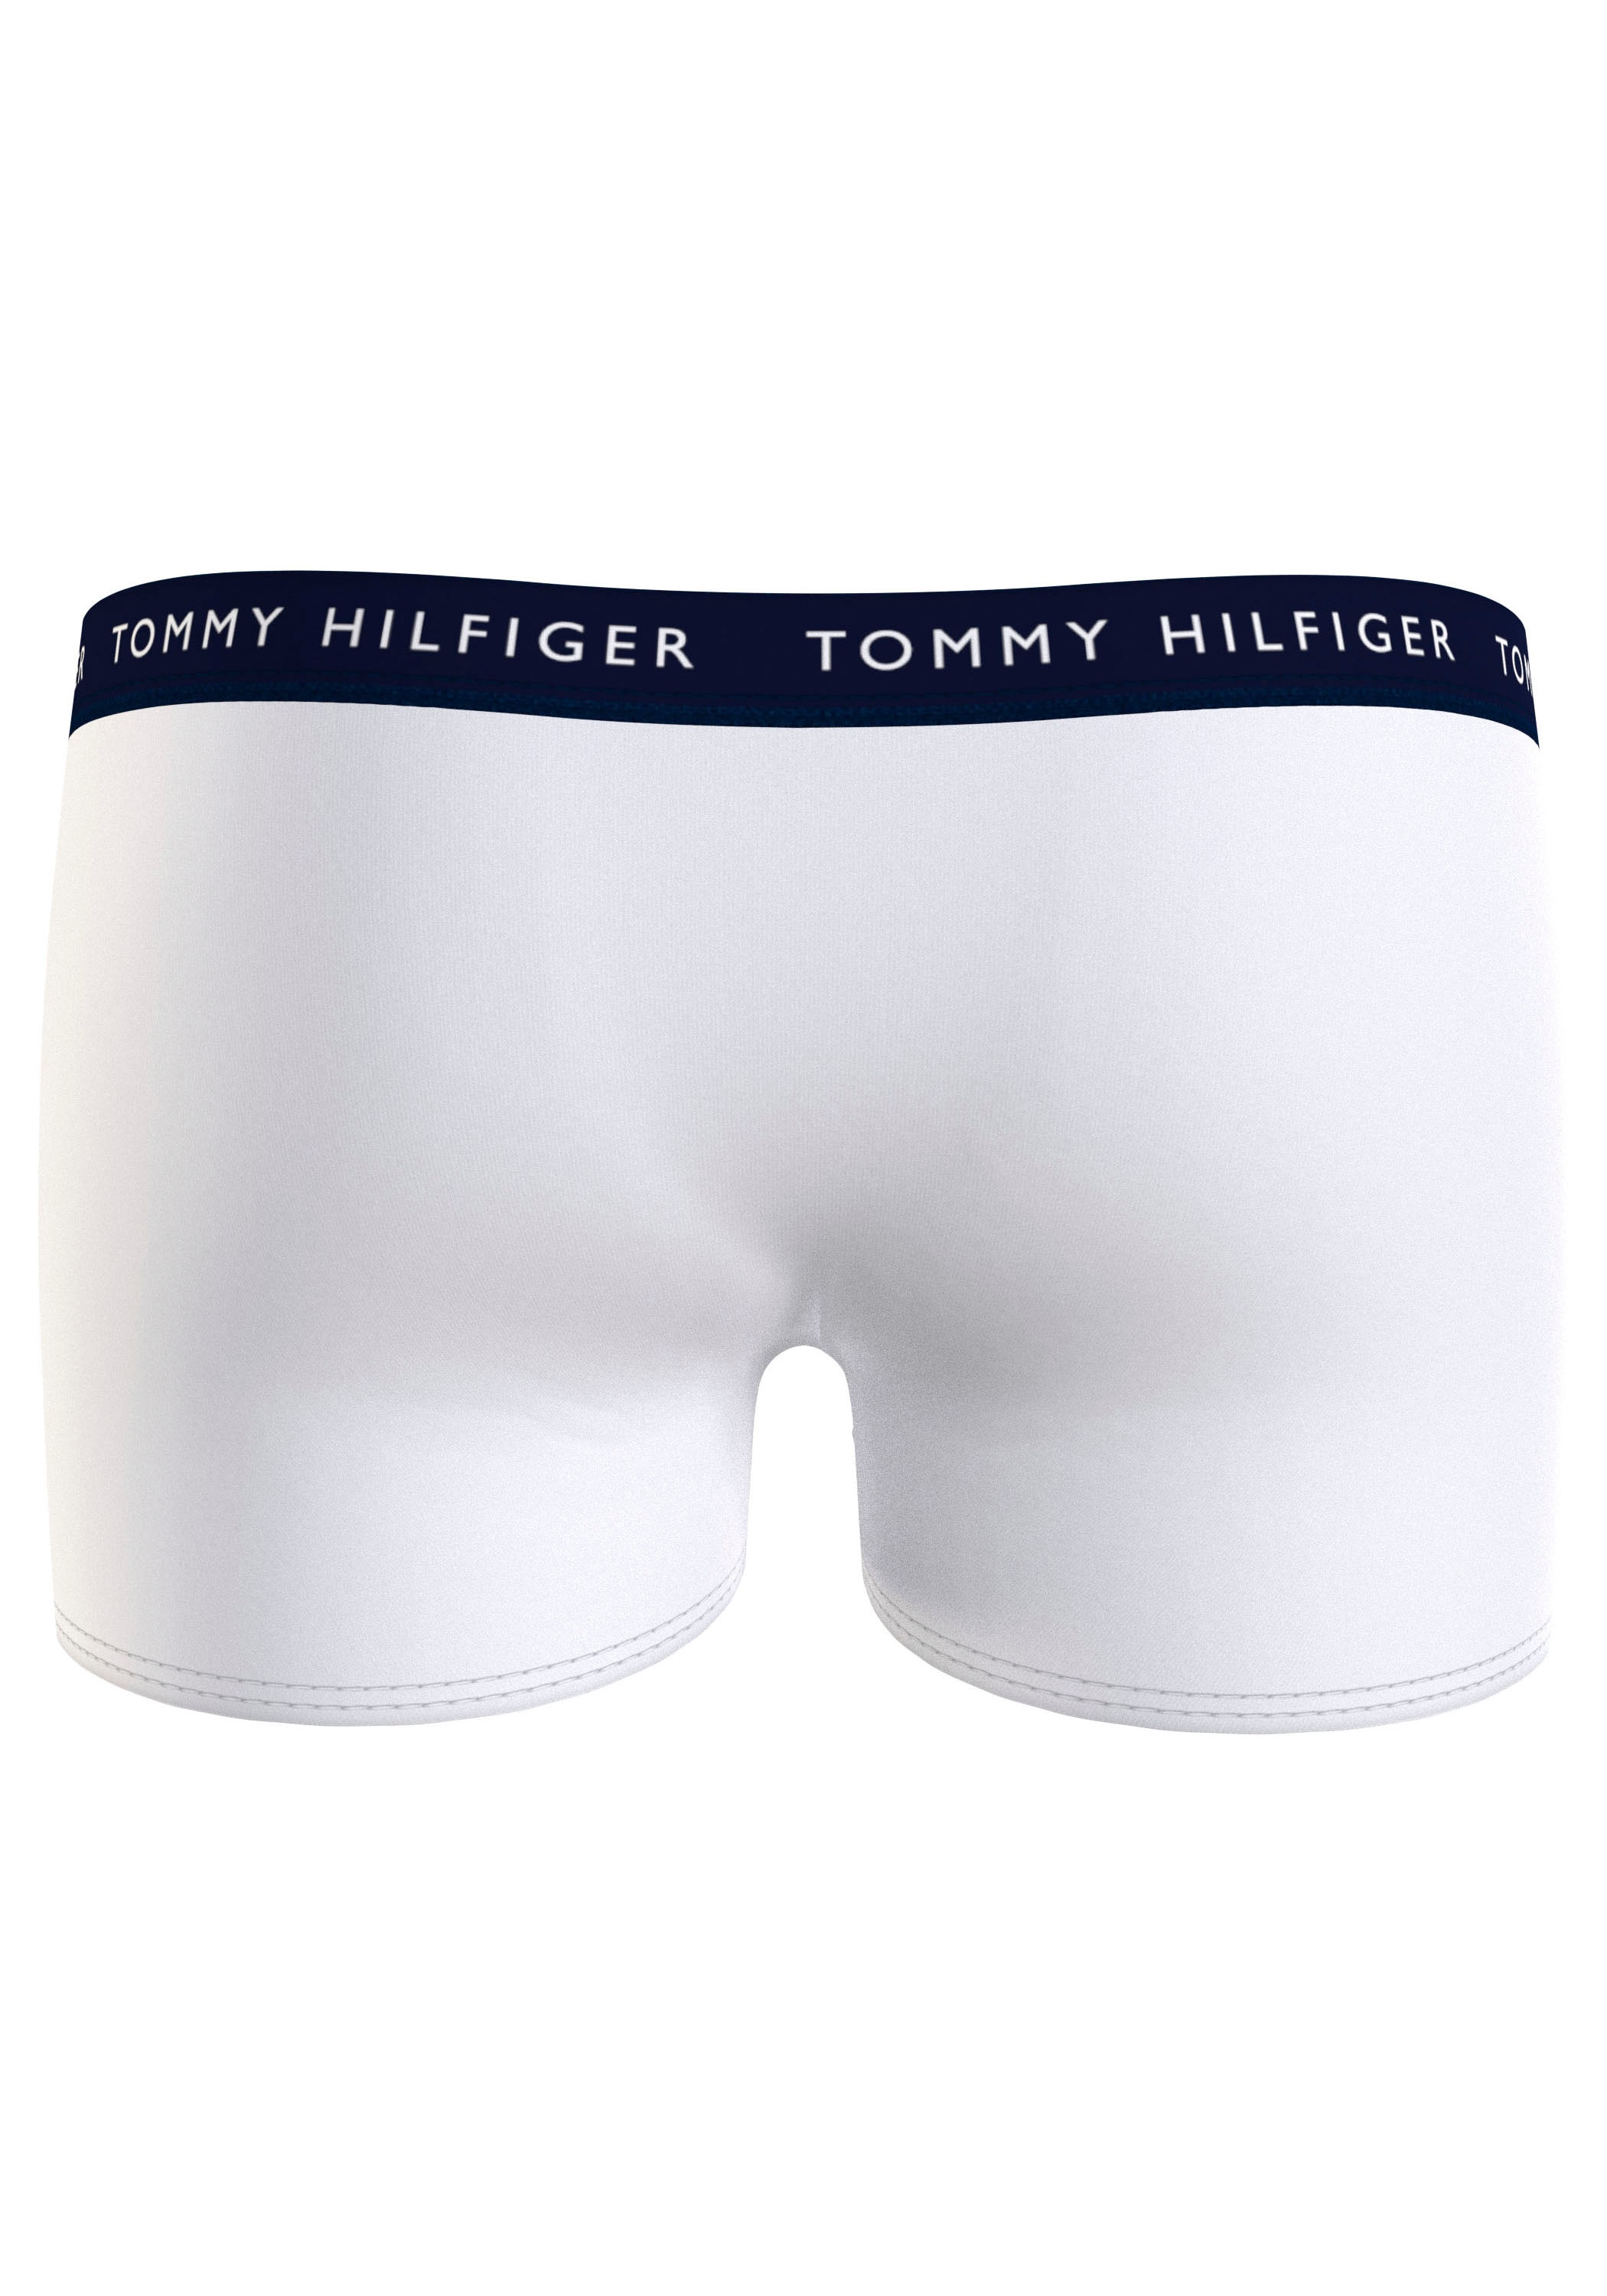 Jelmoli-Online Shop 7er-Pack), Hilfiger-Branding Bund Tommy mit im ❤ Underwear kaufen Hilfiger (Packung, »7P am Trunk Tommy TRUNK«,